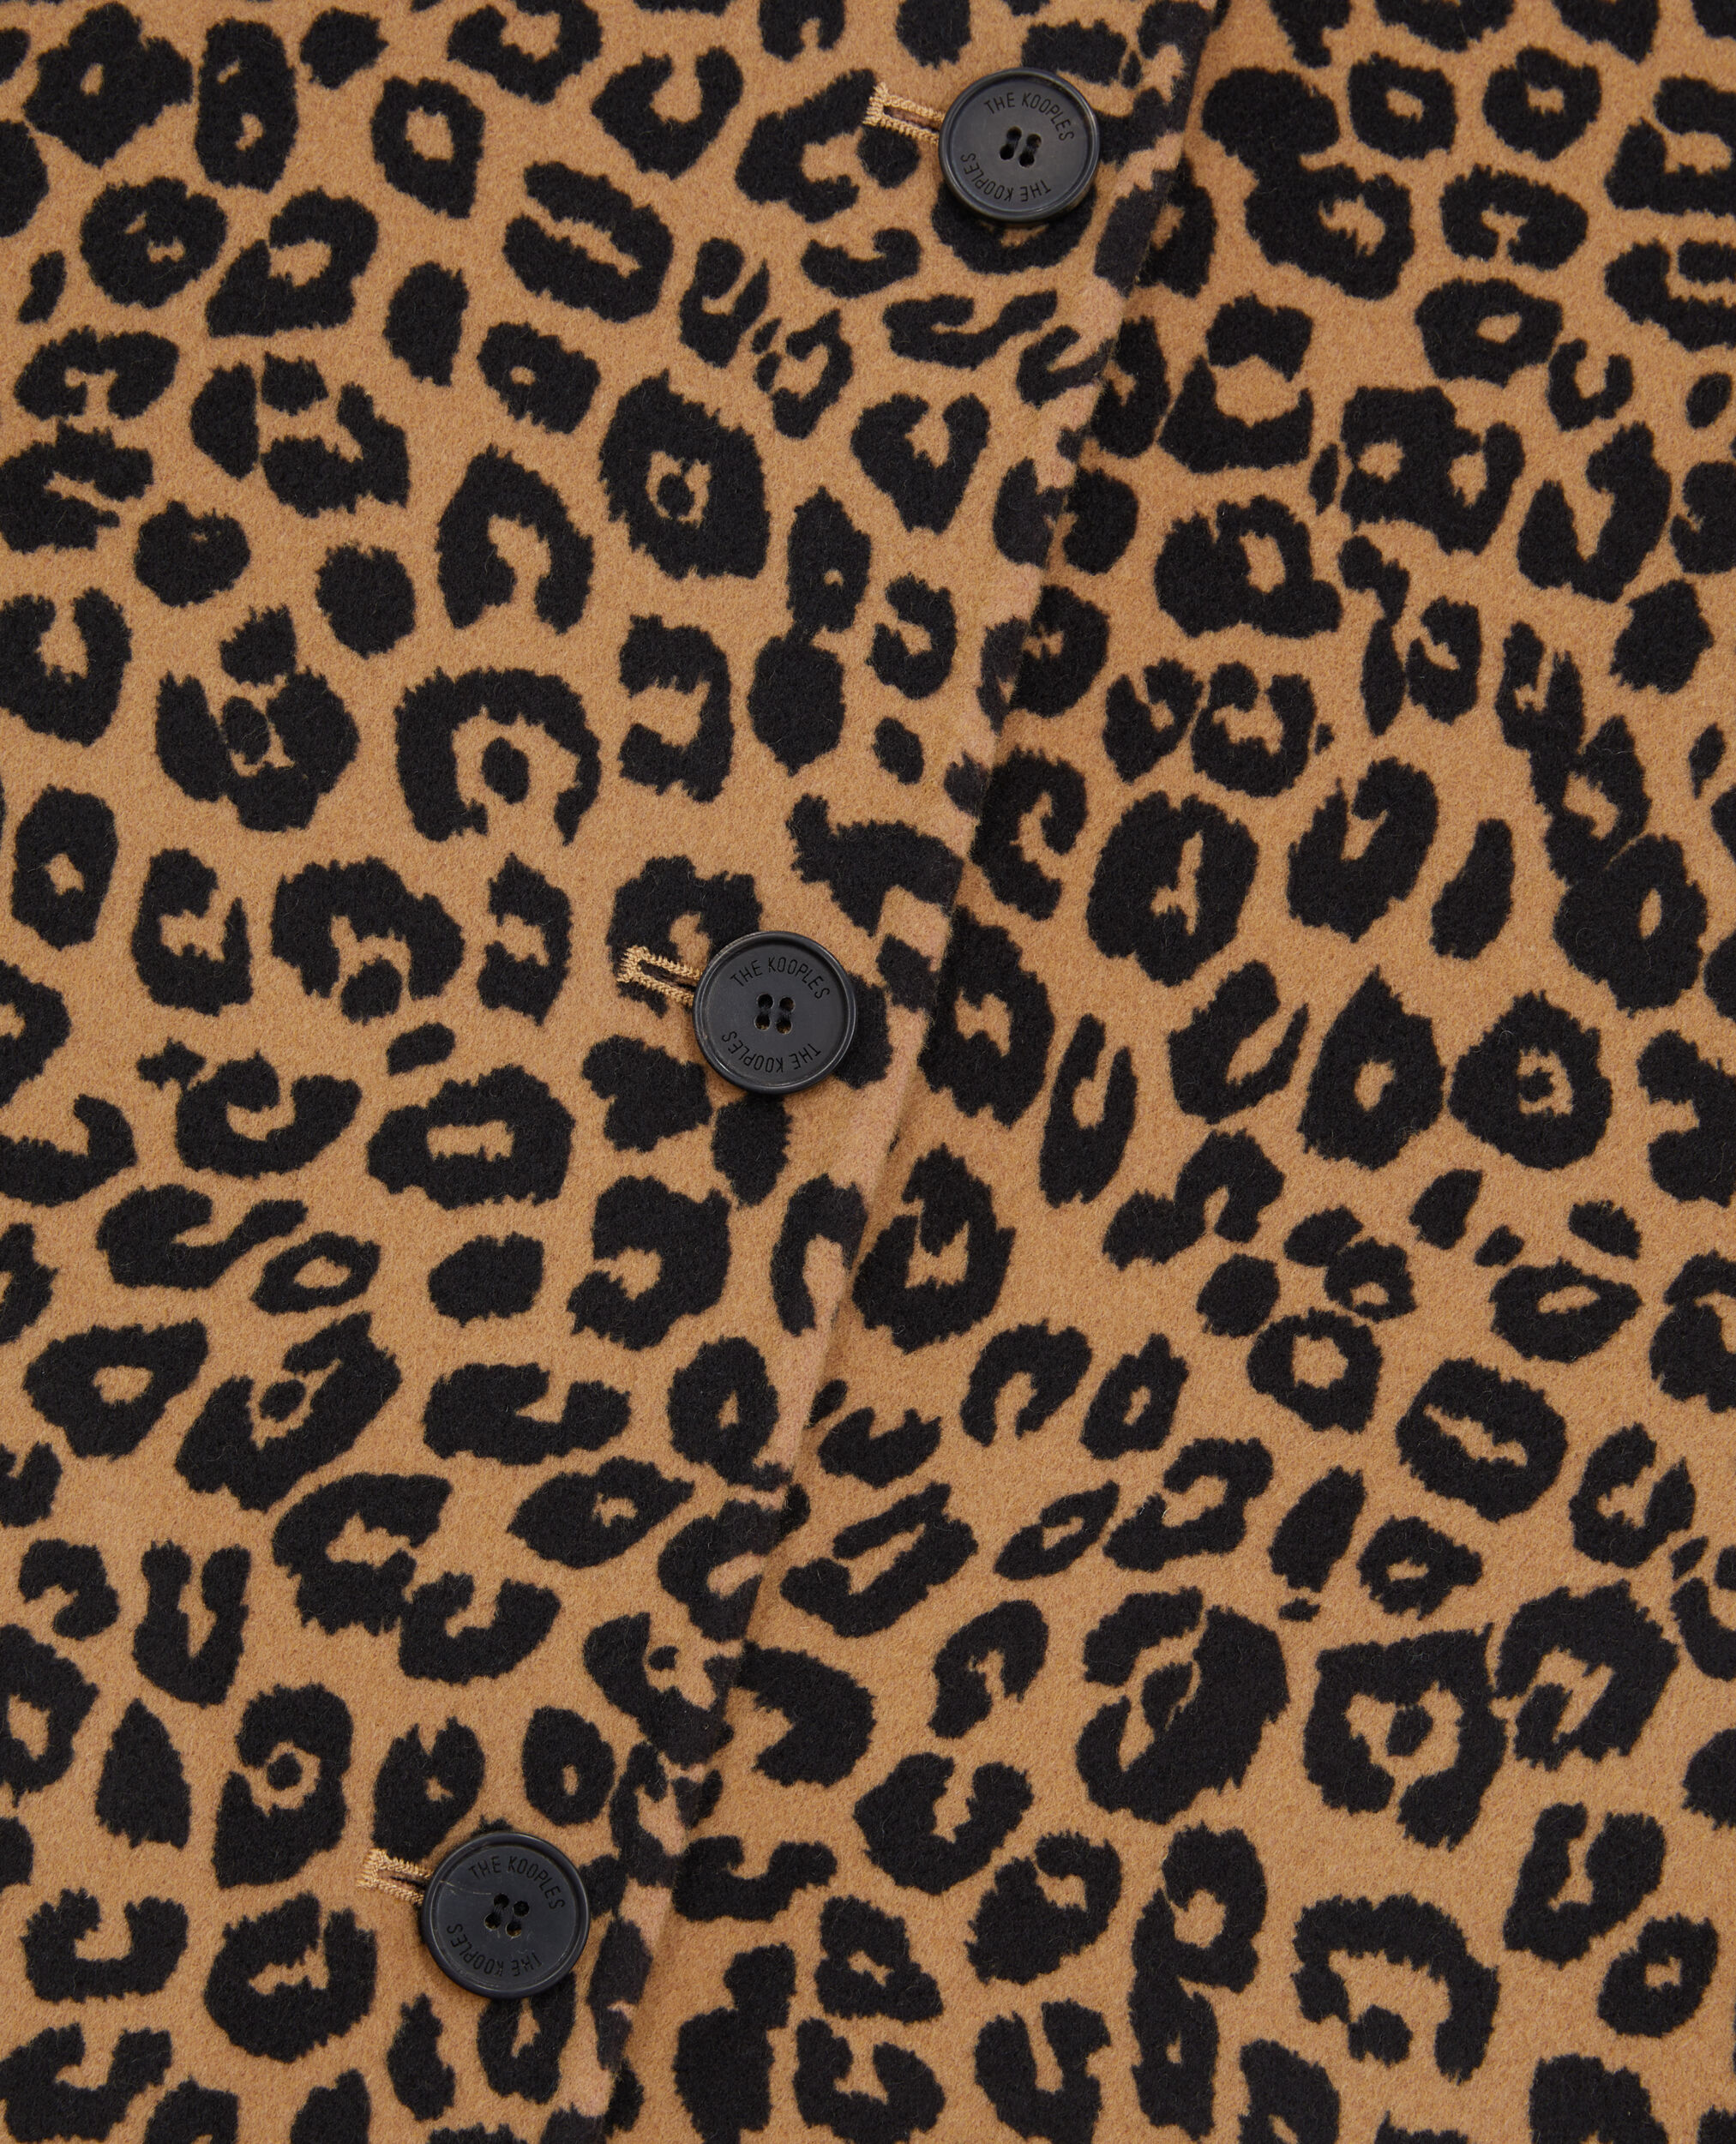 Chaqueta sobrecamisa leopardo mezcla lana, LEOPARD, hi-res image number null